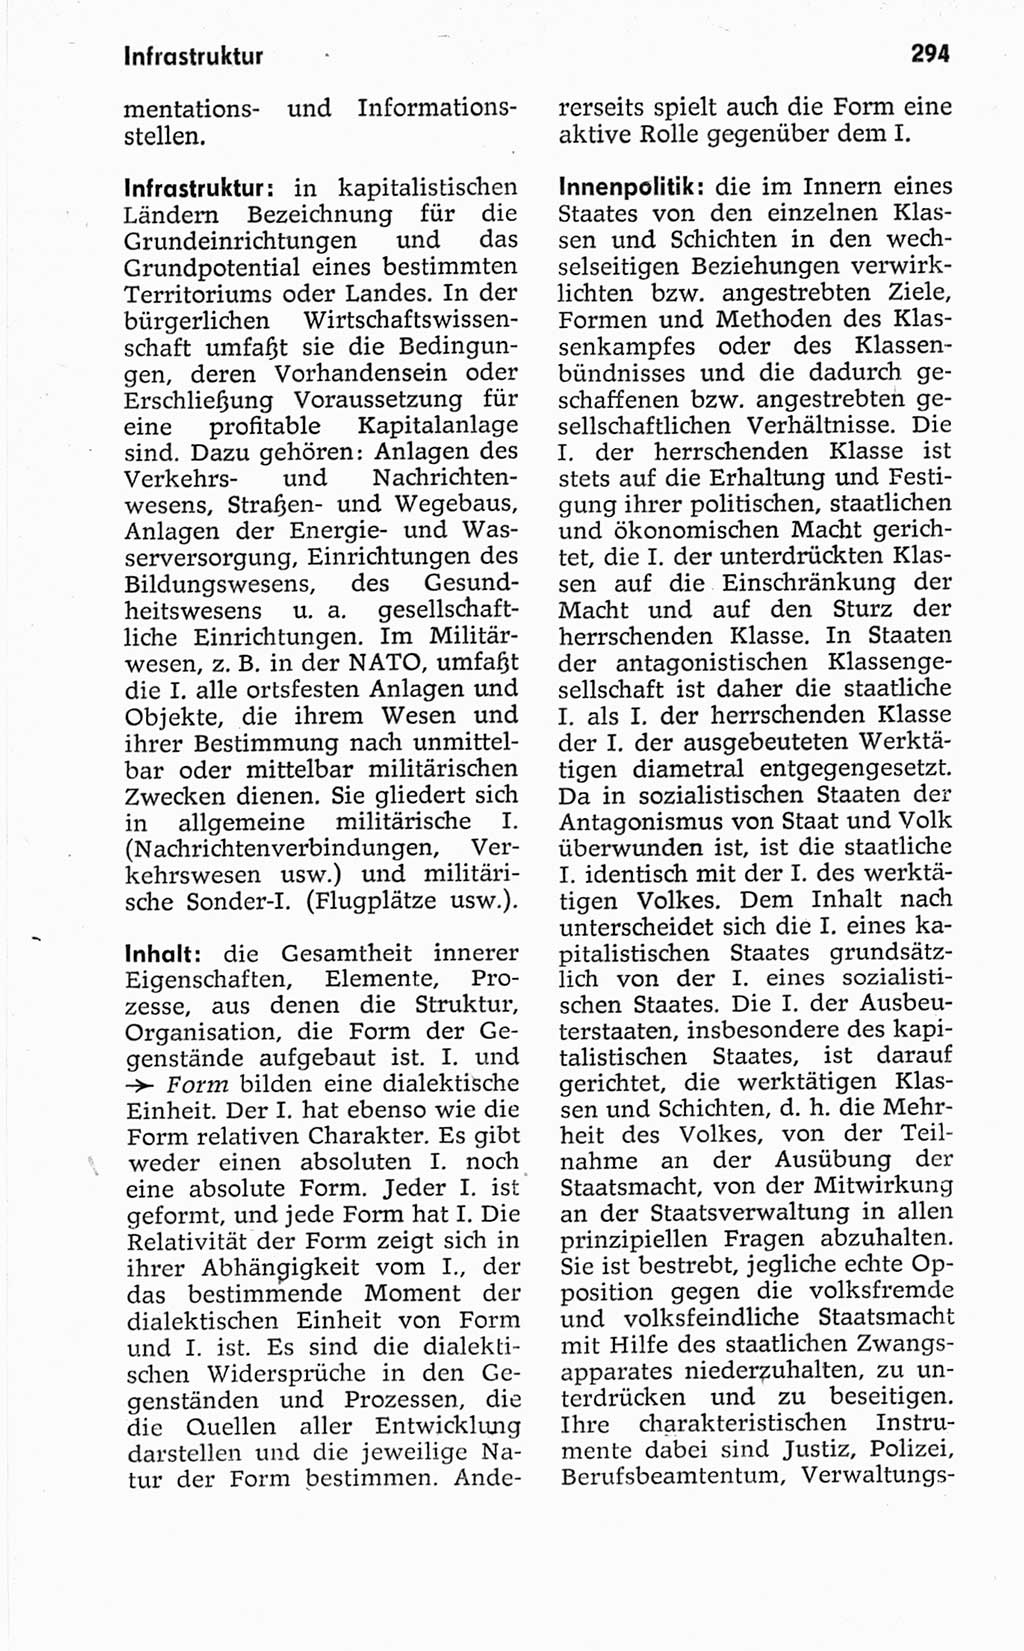 Kleines politisches Wörterbuch [Deutsche Demokratische Republik (DDR)] 1967, Seite 294 (Kl. pol. Wb. DDR 1967, S. 294)